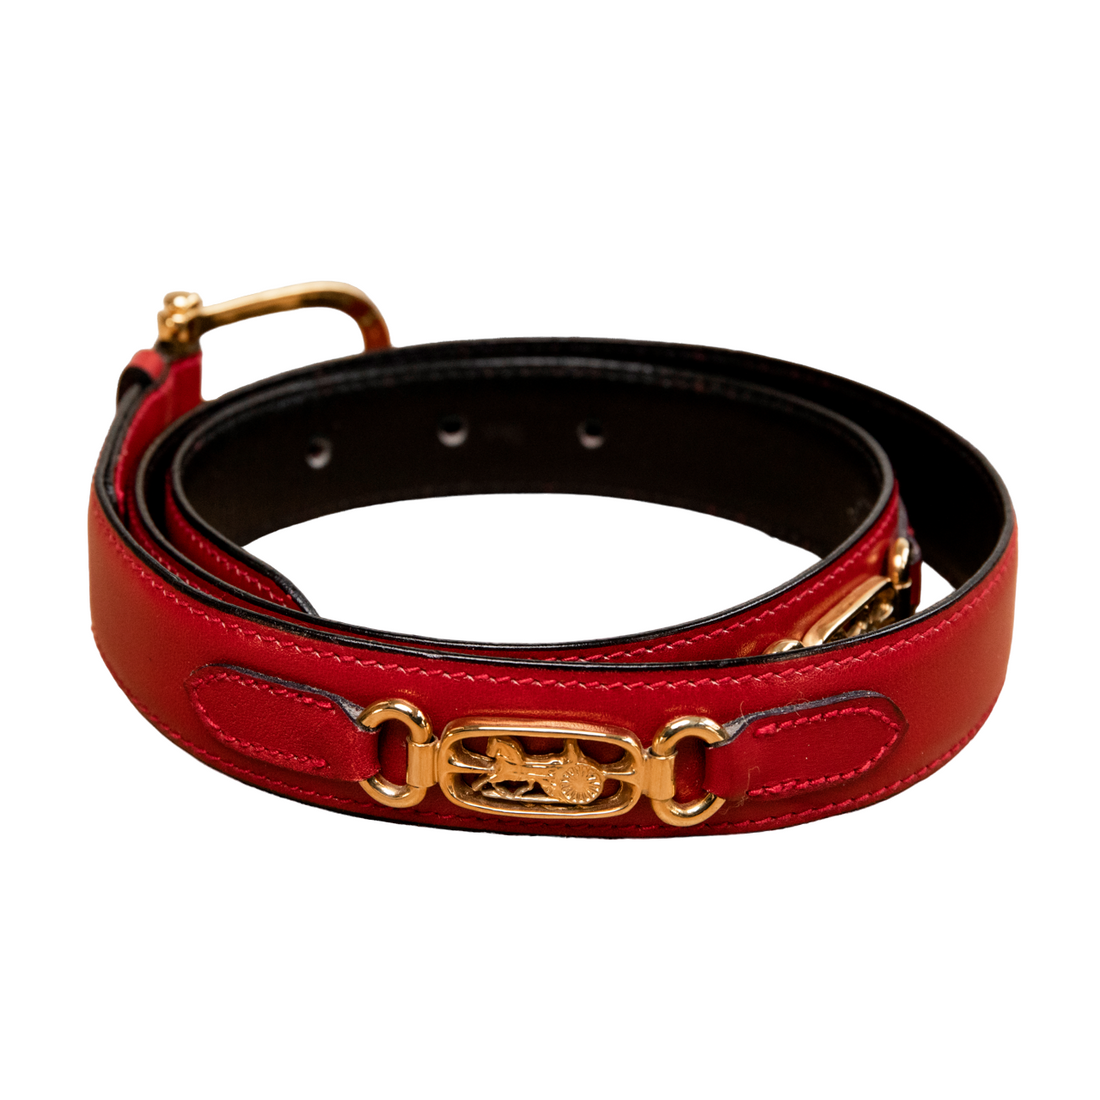 Celine Red vintage belt with gold hardware